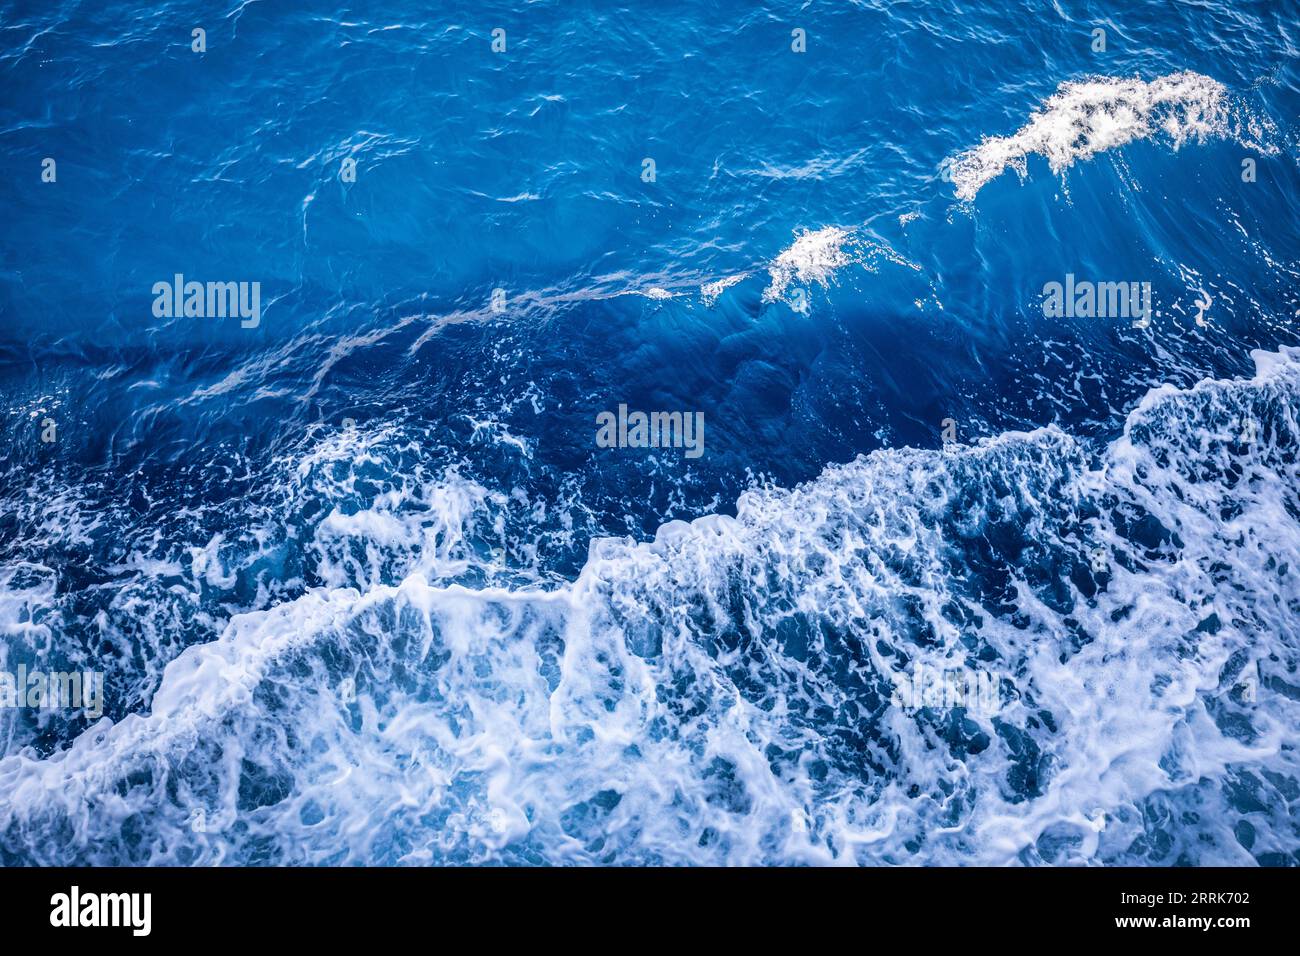 Croatie, baie de Kvarner, comté de Primorje Gorski Kotar, île de Krk, mer bleue, rugueuse avec des vagues mousseuses Banque D'Images